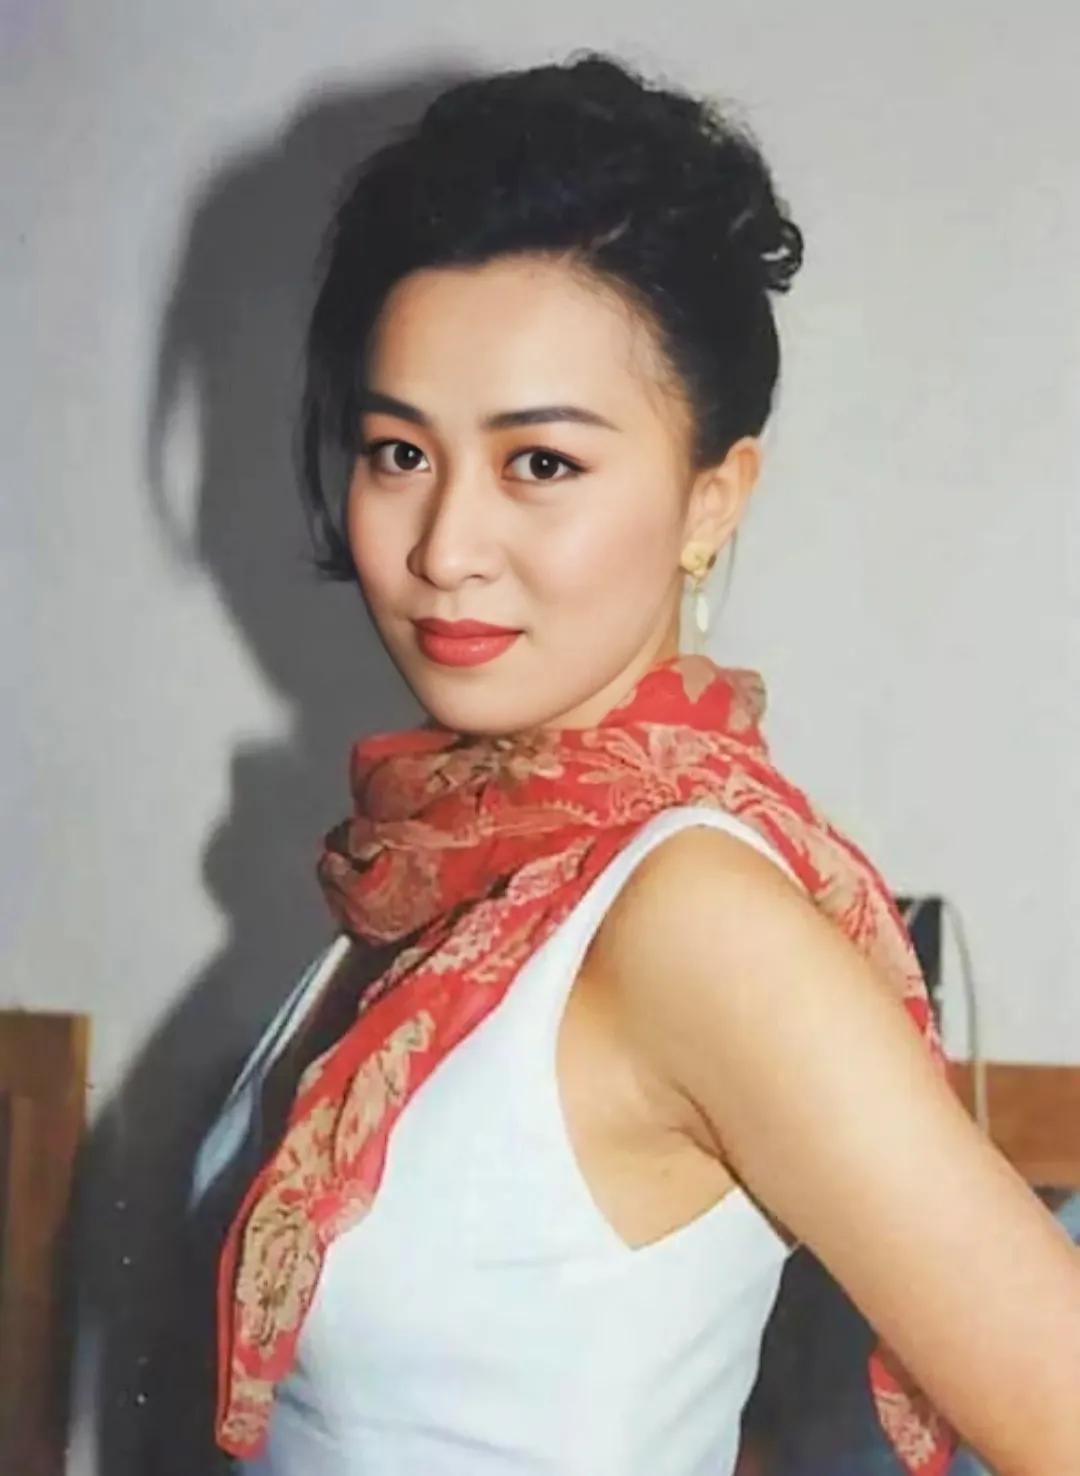 论起长相,刘嘉玲,当初也是香港演艺圈女明星们的公敌,因为她太漂亮了